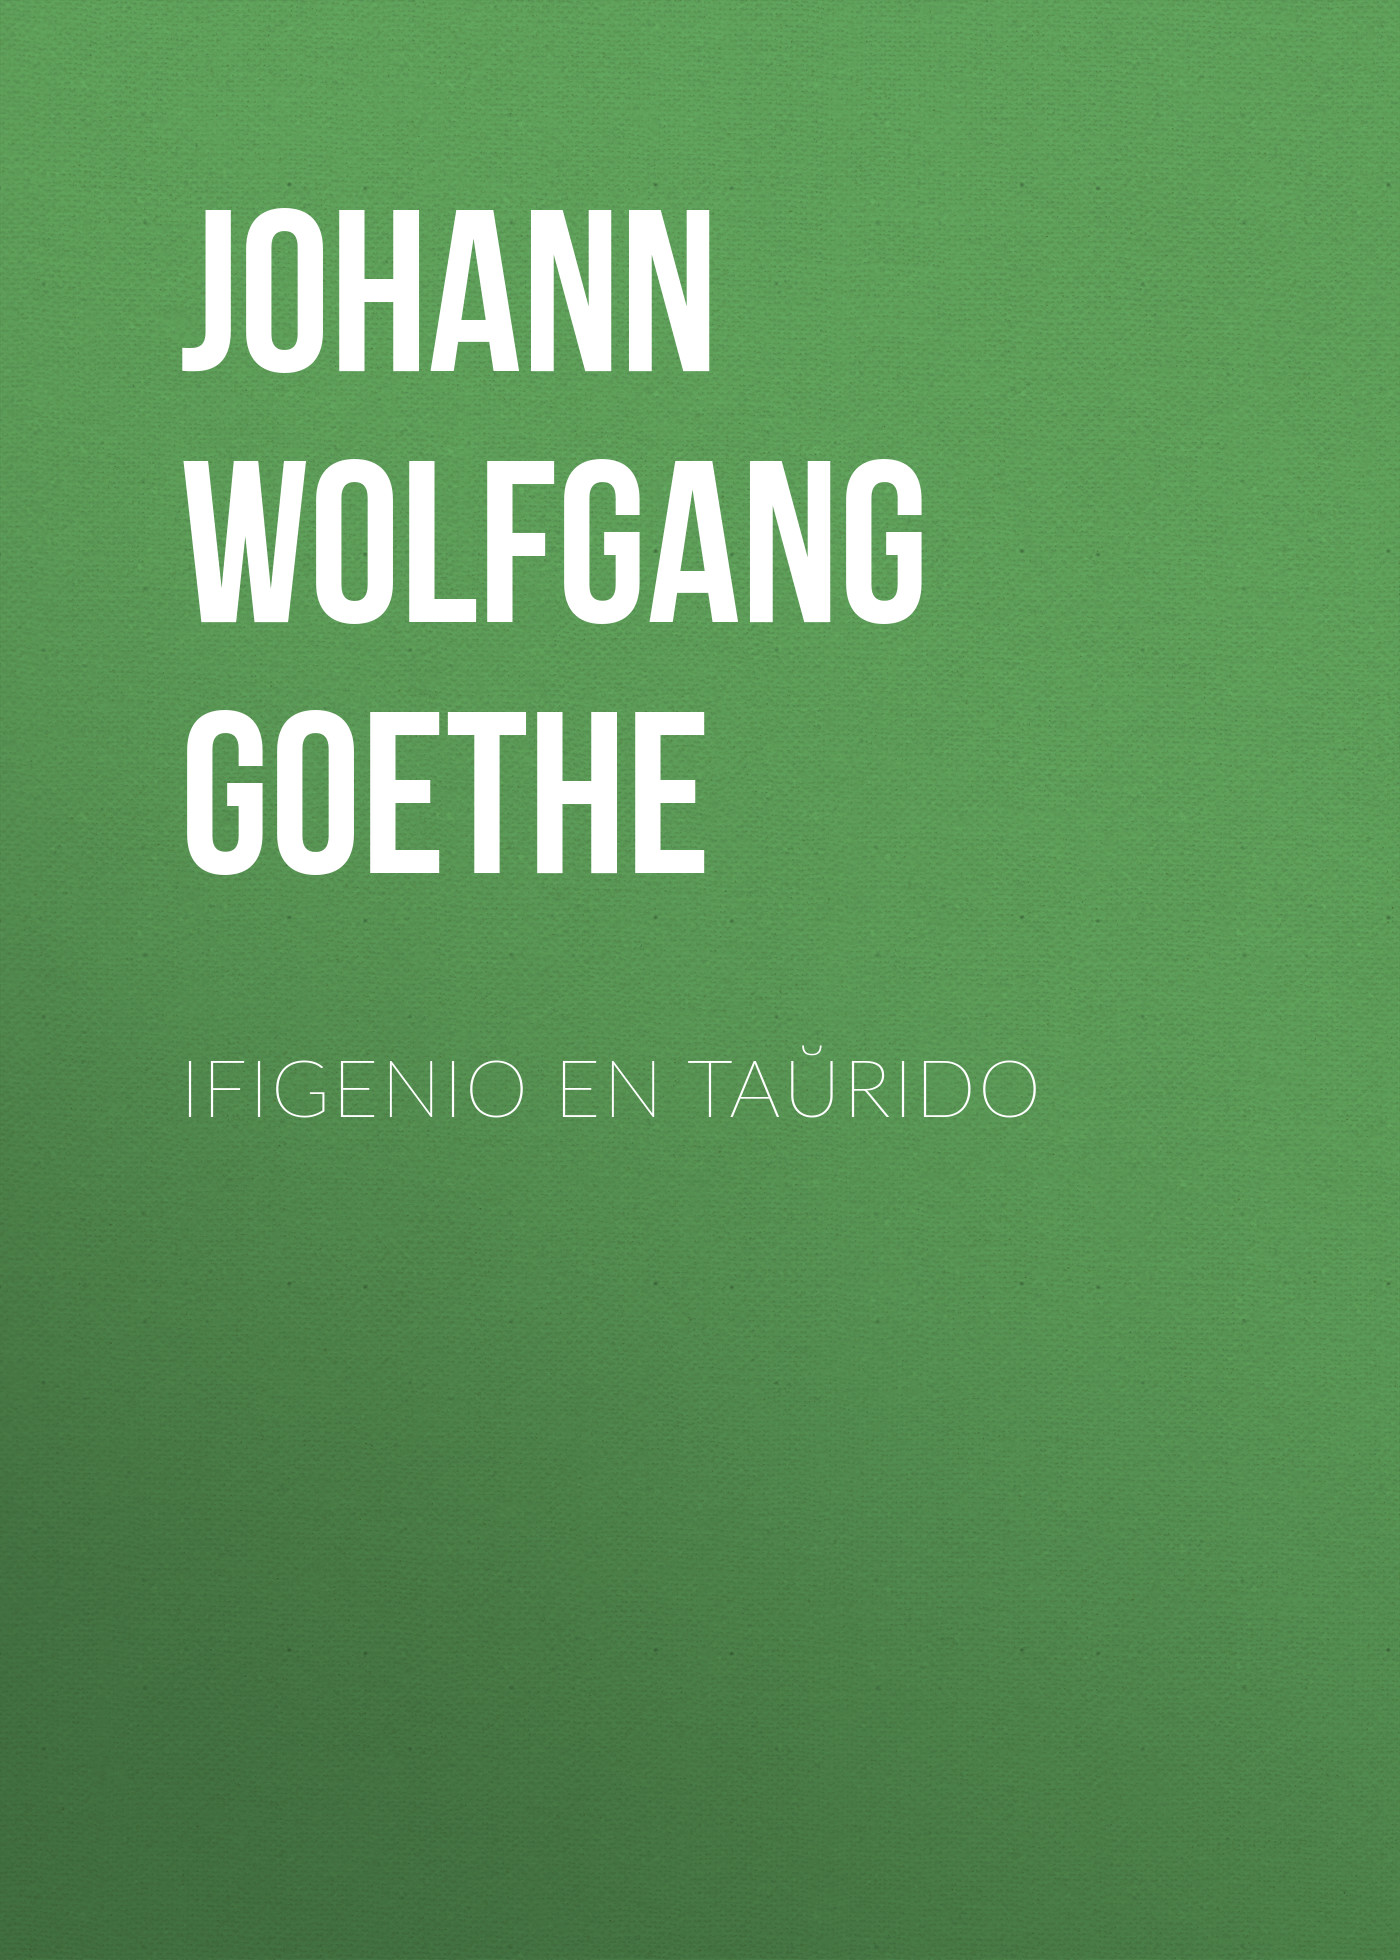 Книга Ifigenio en Taŭrido из серии , созданная Johann von Goethe, может относится к жанру Зарубежная старинная литература, Зарубежная классика. Стоимость электронной книги Ifigenio en Taŭrido с идентификатором 25202479 составляет 0 руб.